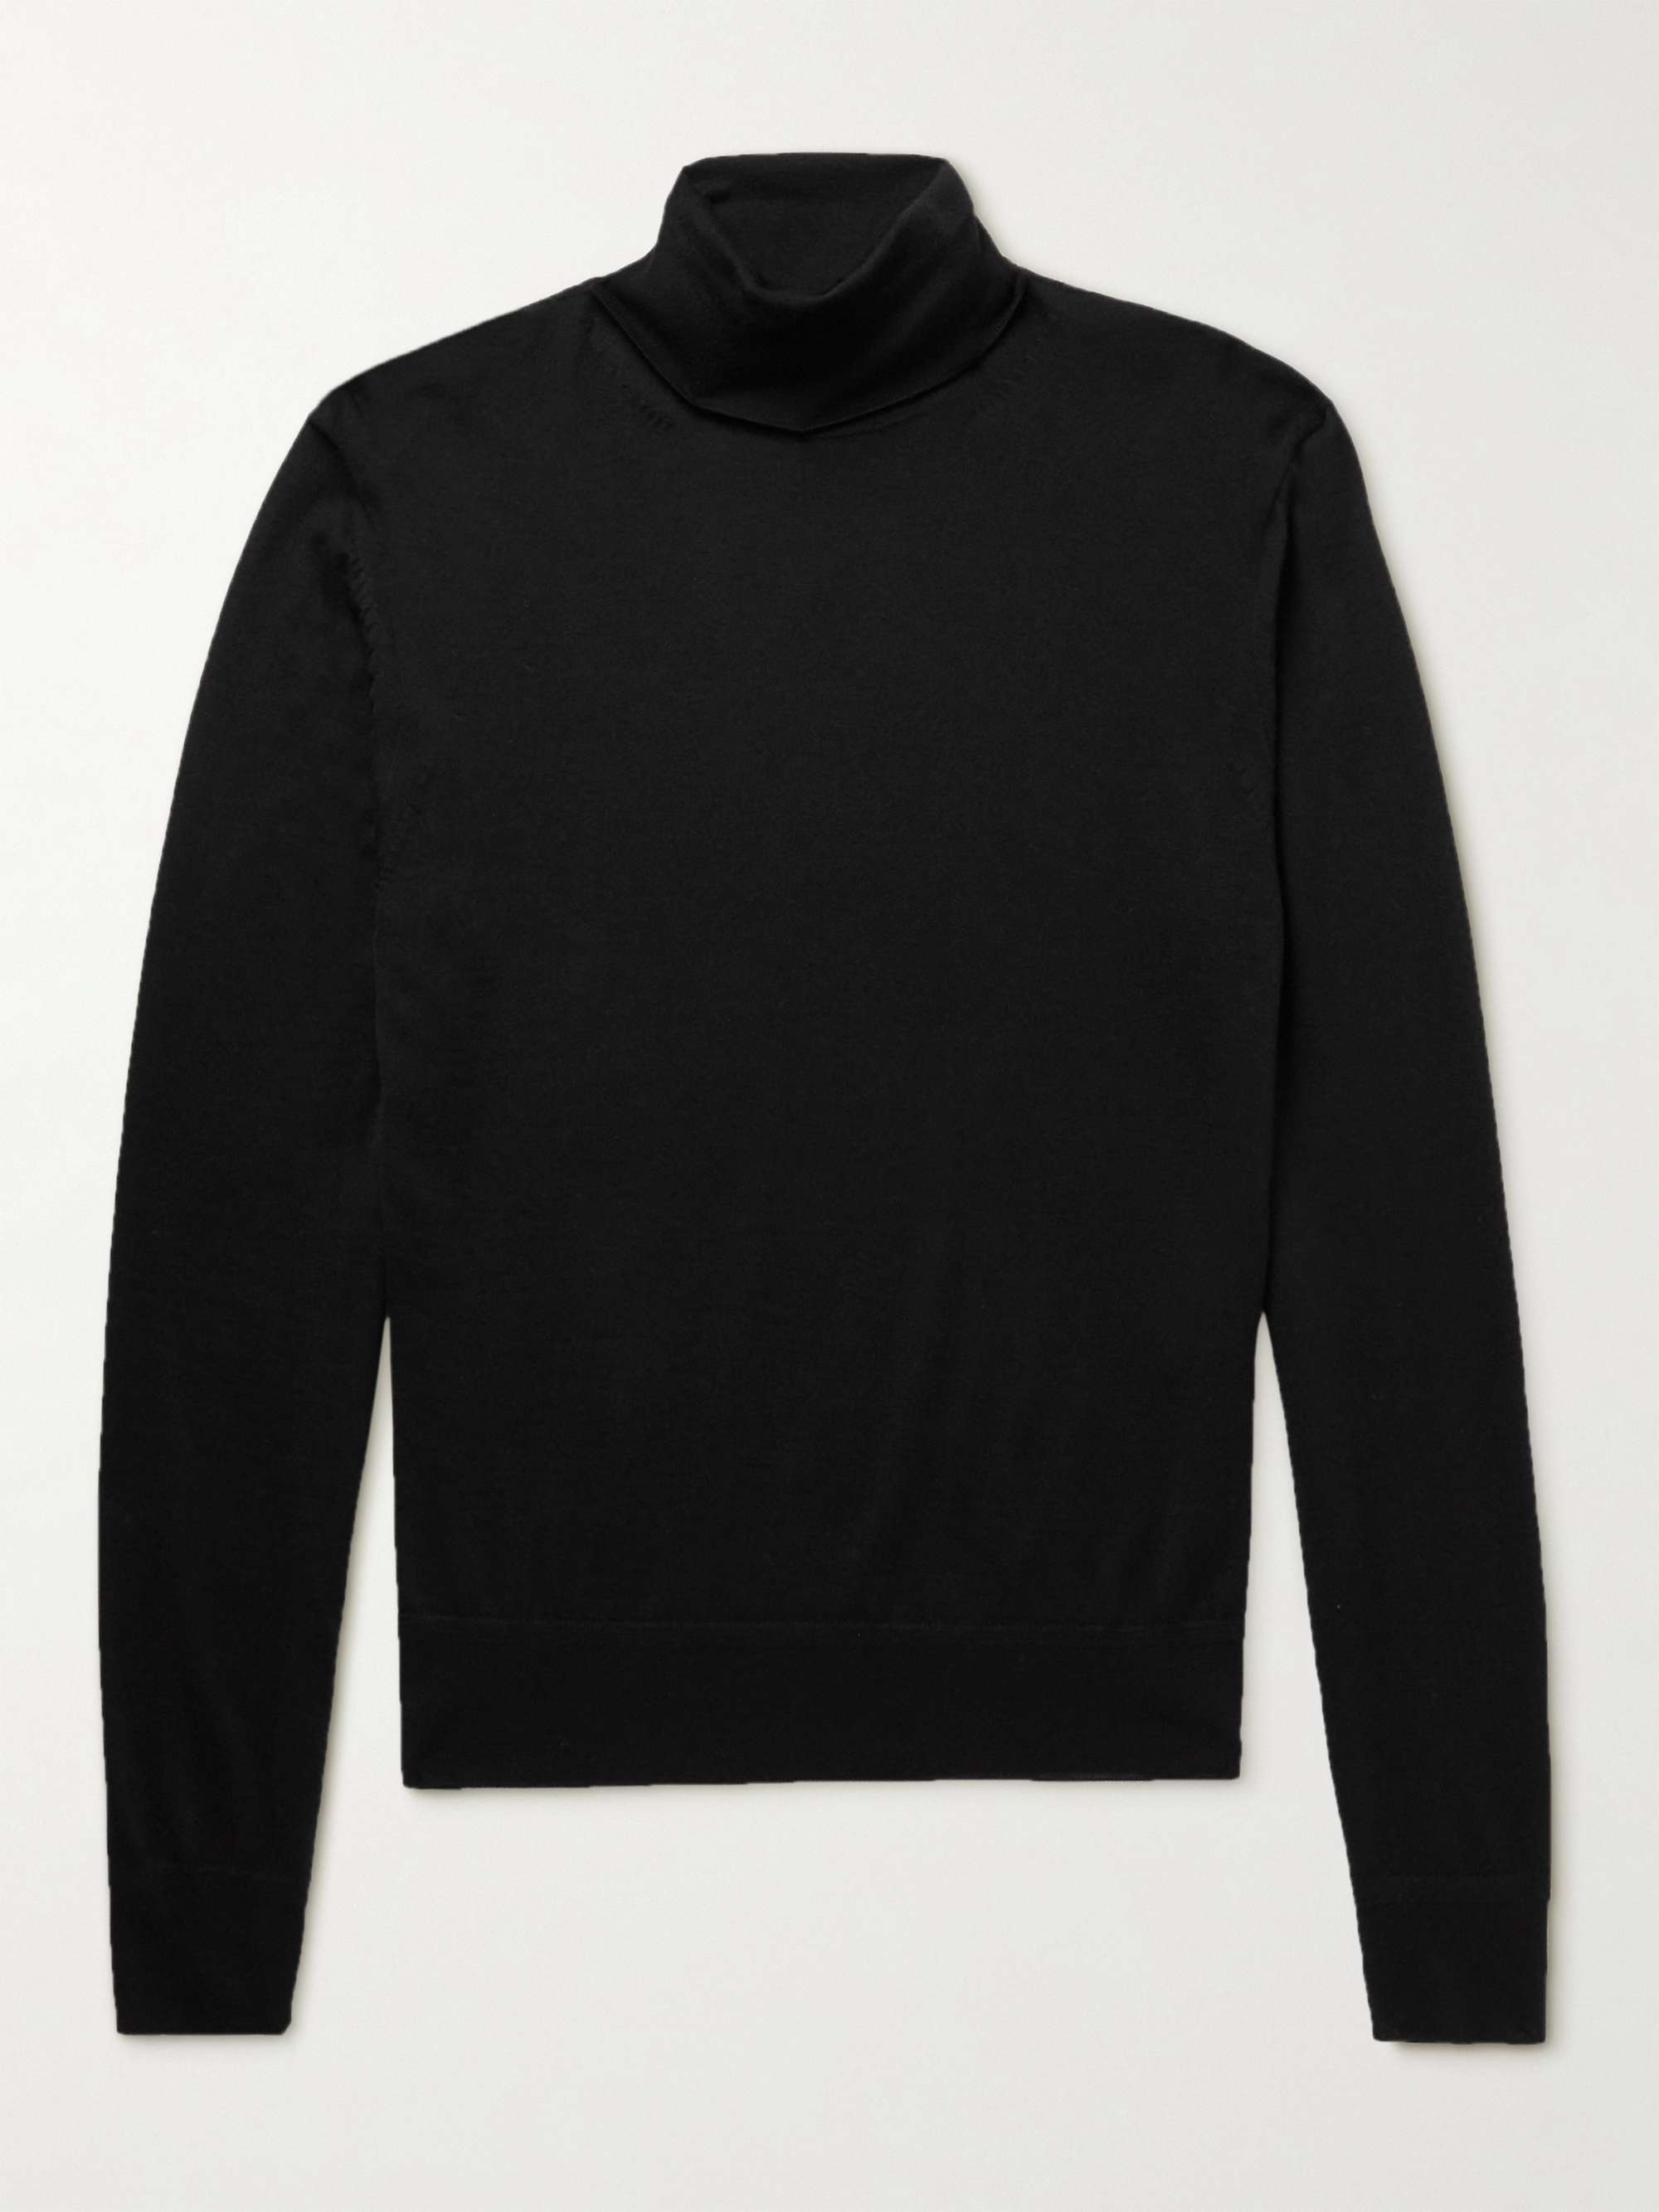 Black Cashmere and Silk-Blend Rollneck Sweater | TOM FORD | MR PORTER